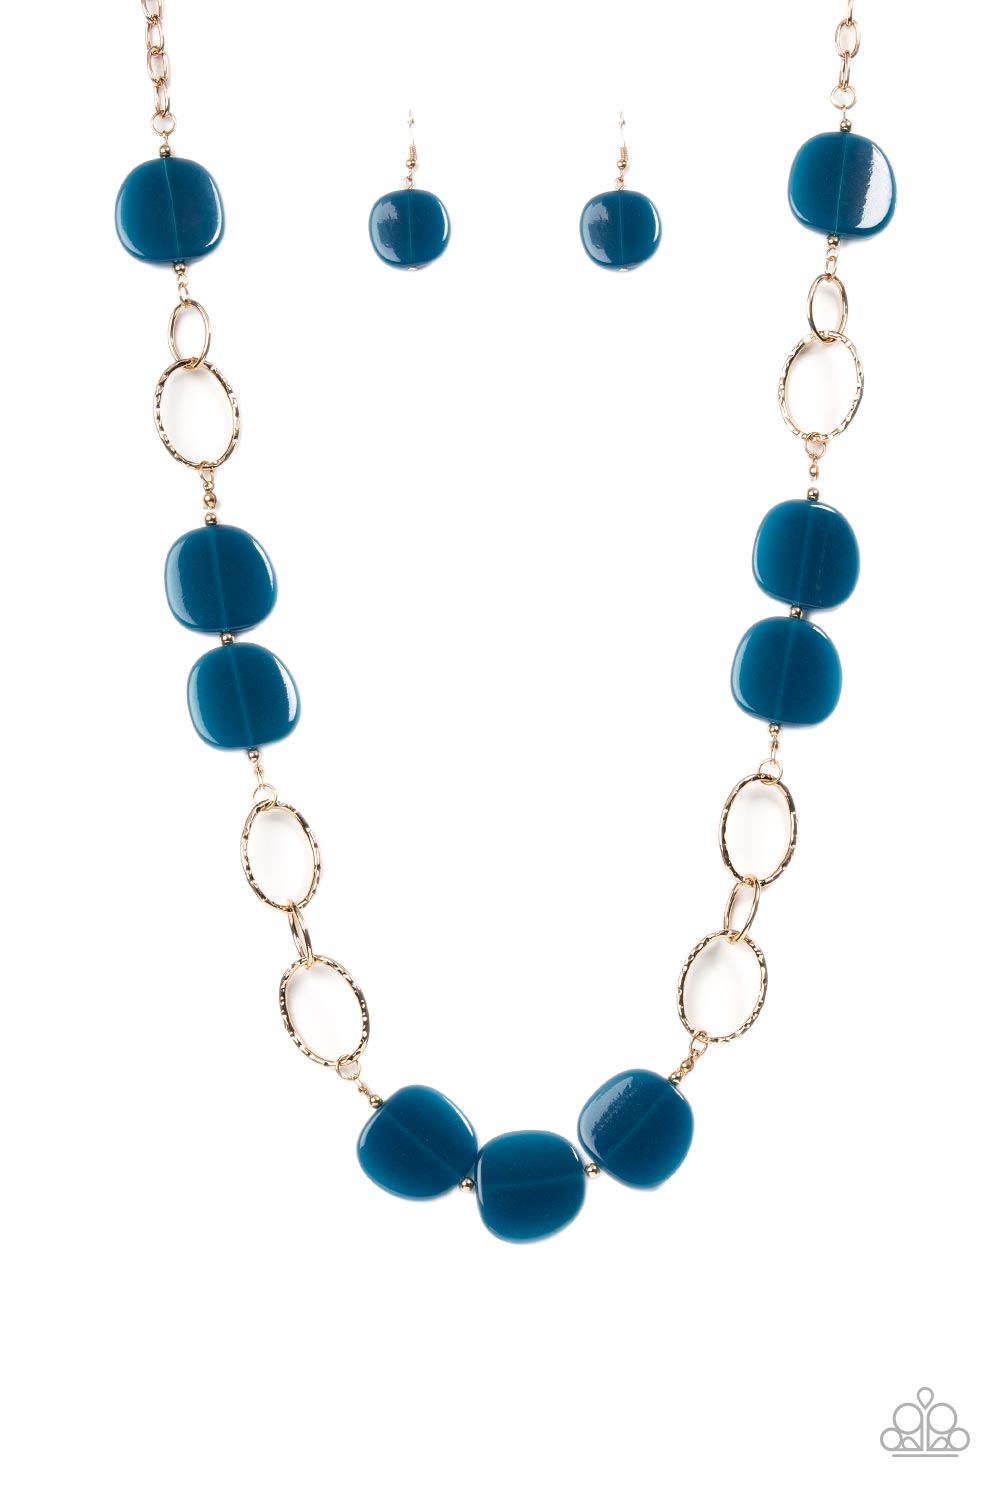 Posh Promenade - Blue and Gold Necklace - Paparazzi Accessories